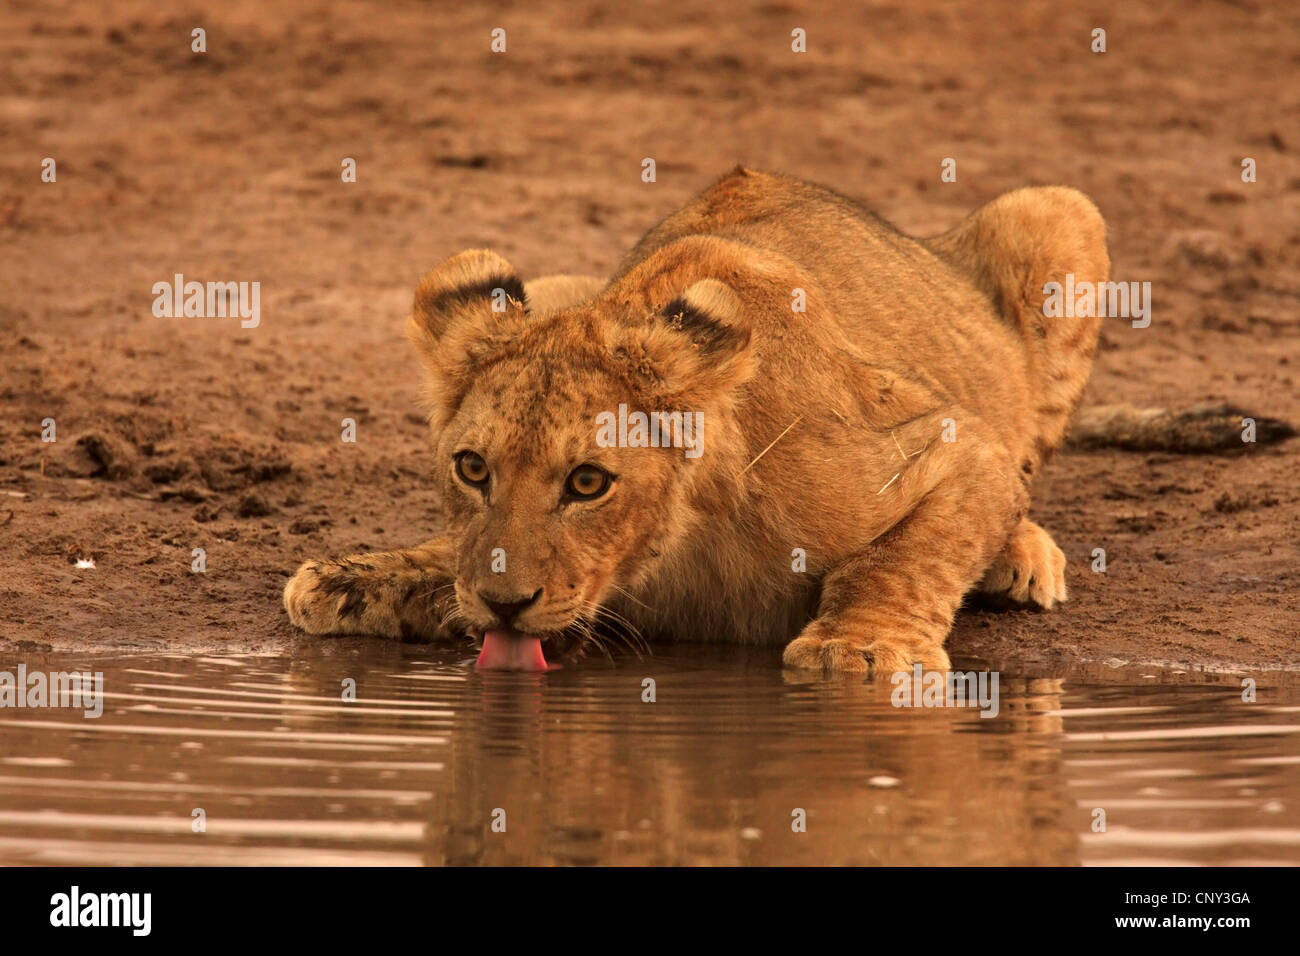 Lion (Panthera leo), boire Lion cub, Botswana, Chobe National Park Banque D'Images